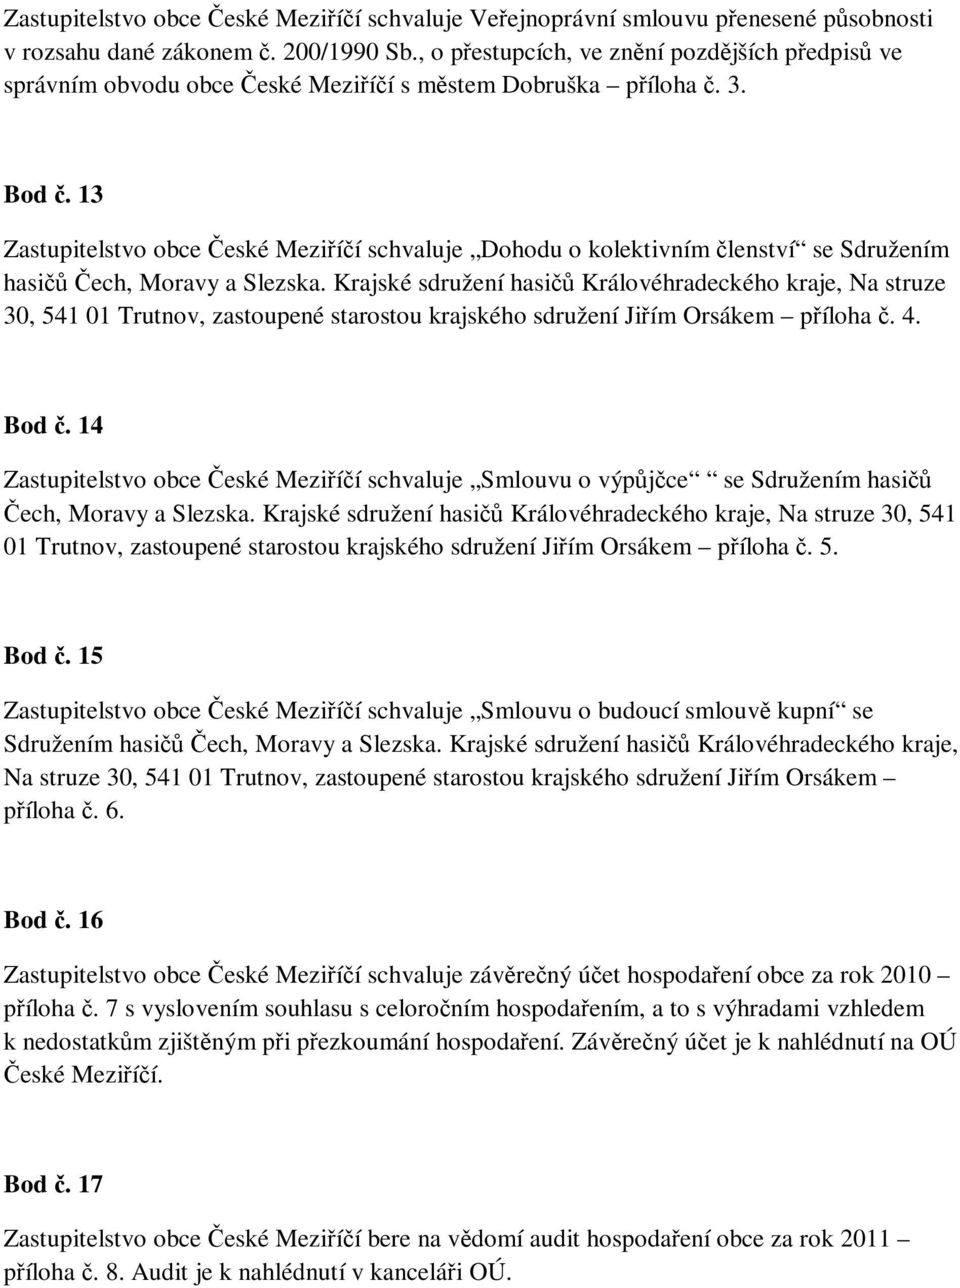 13 Zastupitelstvo obce České Meziříčí schvaluje Dohodu o kolektivním členství se Sdružením hasičů Čech, Moravy a Slezska.